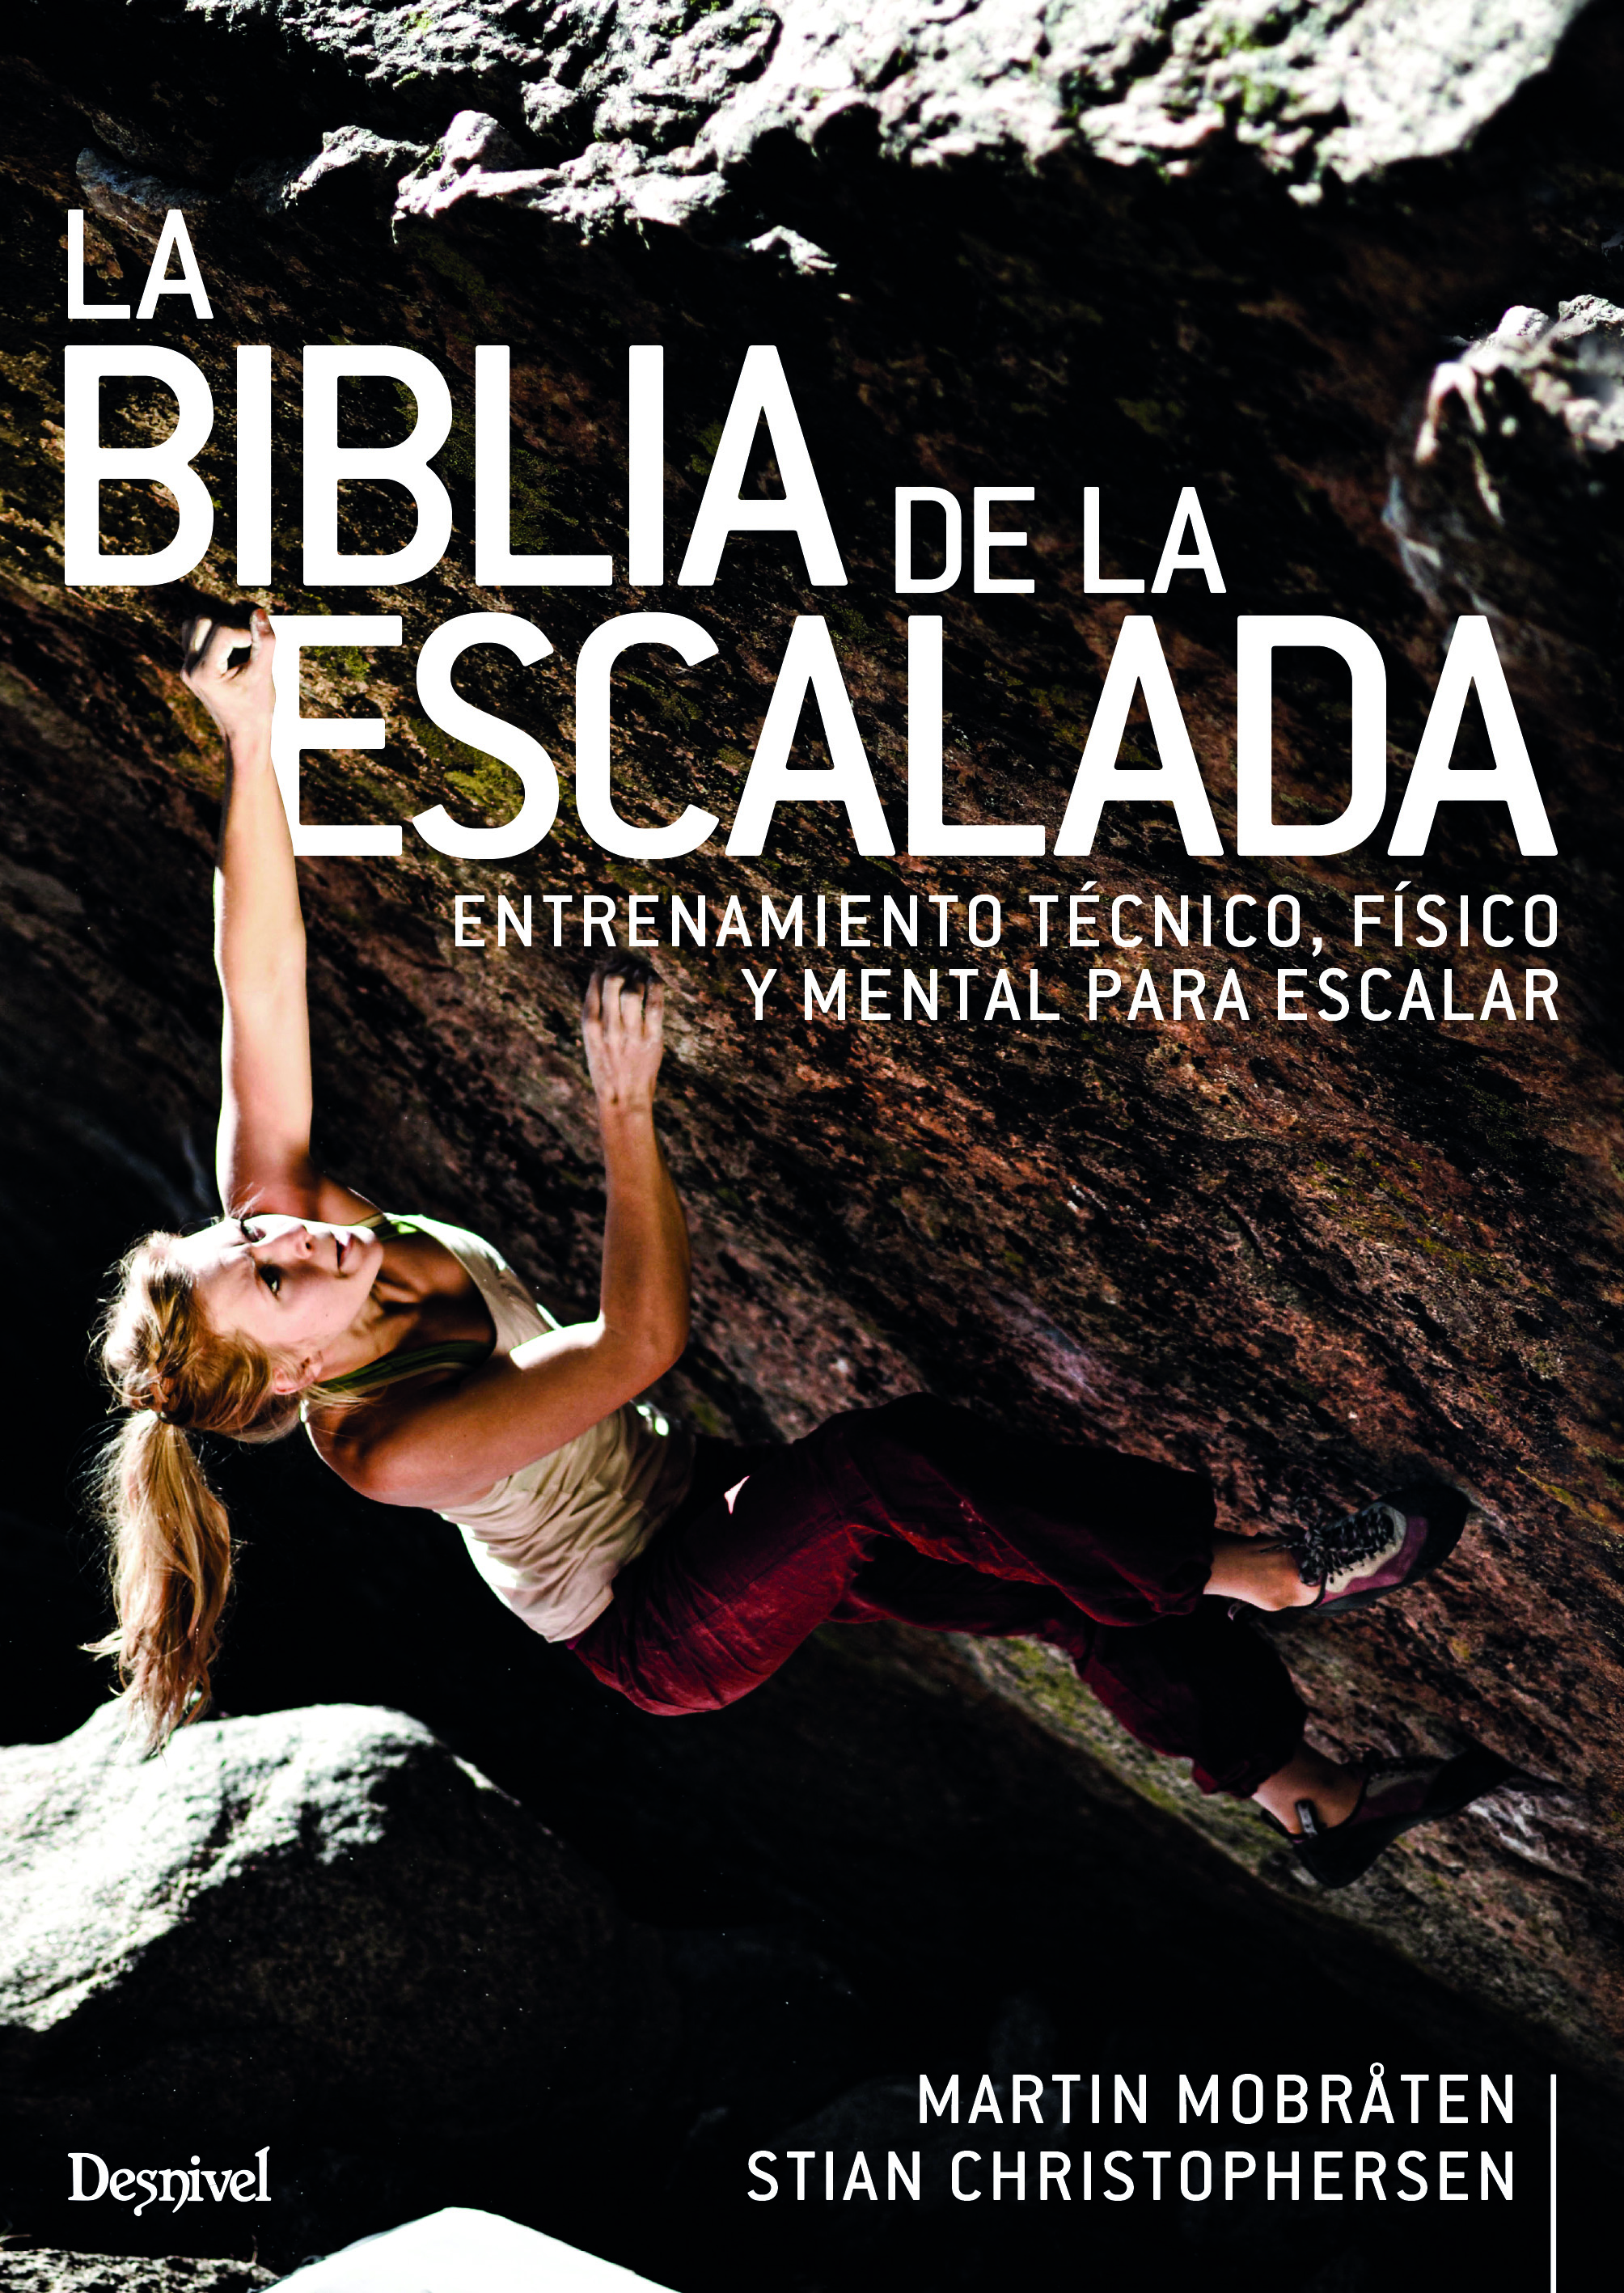 La Biblia de la escalada. Inspiración y actitud